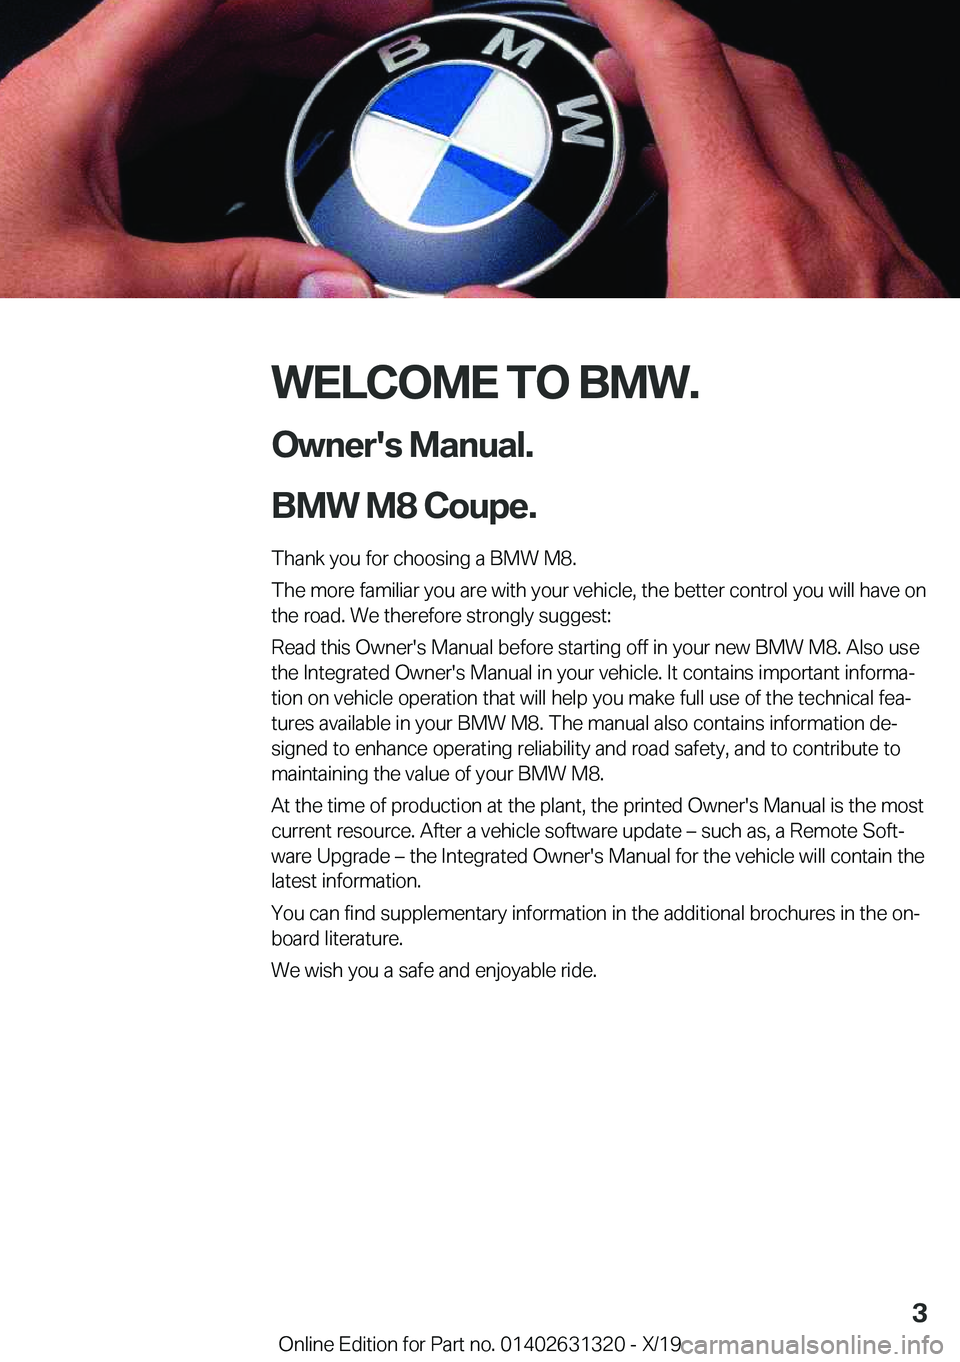 BMW M8 COUPE 2020  Owners Manual �W�E�L�C�O�M�E��T�O��B�M�W�.�O�w�n�e�r�'�s��M�a�n�u�a�l�.
�B�M�W��M�8��C�o�u�p�e�.
�T�h�a�n�k��y�o�u��f�o�r��c�h�o�o�s�i�n�g��a��B�M�W��M�8�.
�T�h�e��m�o�r�e��f�a�m�i�l�i�a�r��y�o�u�